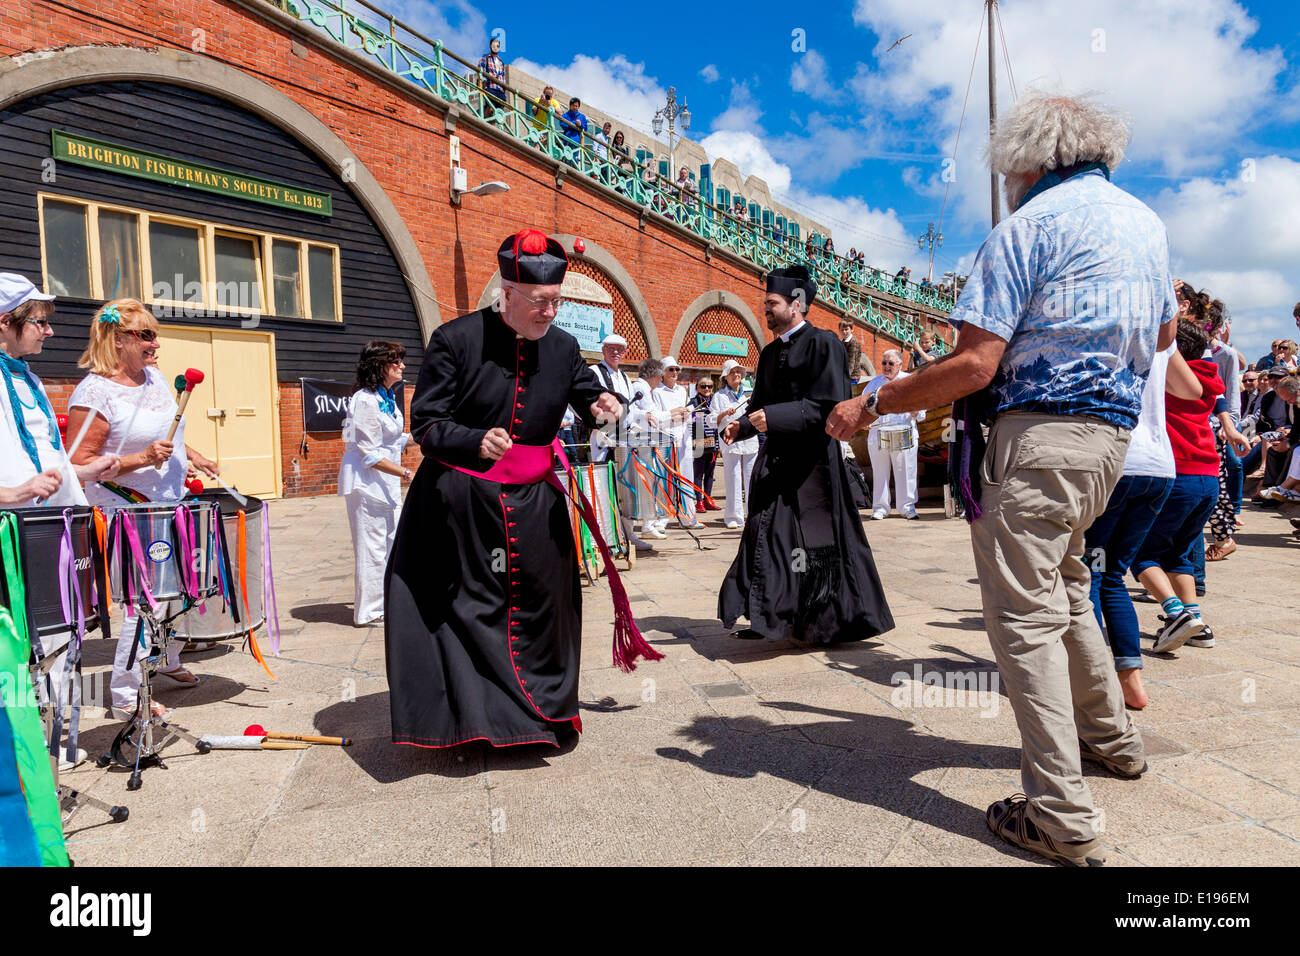 Parrocchia locale i sacerdoti a ballare la Silver suoni banda Samba al sgombro Fayre, Brighton Seafront, Sussex, Inghilterra Foto Stock